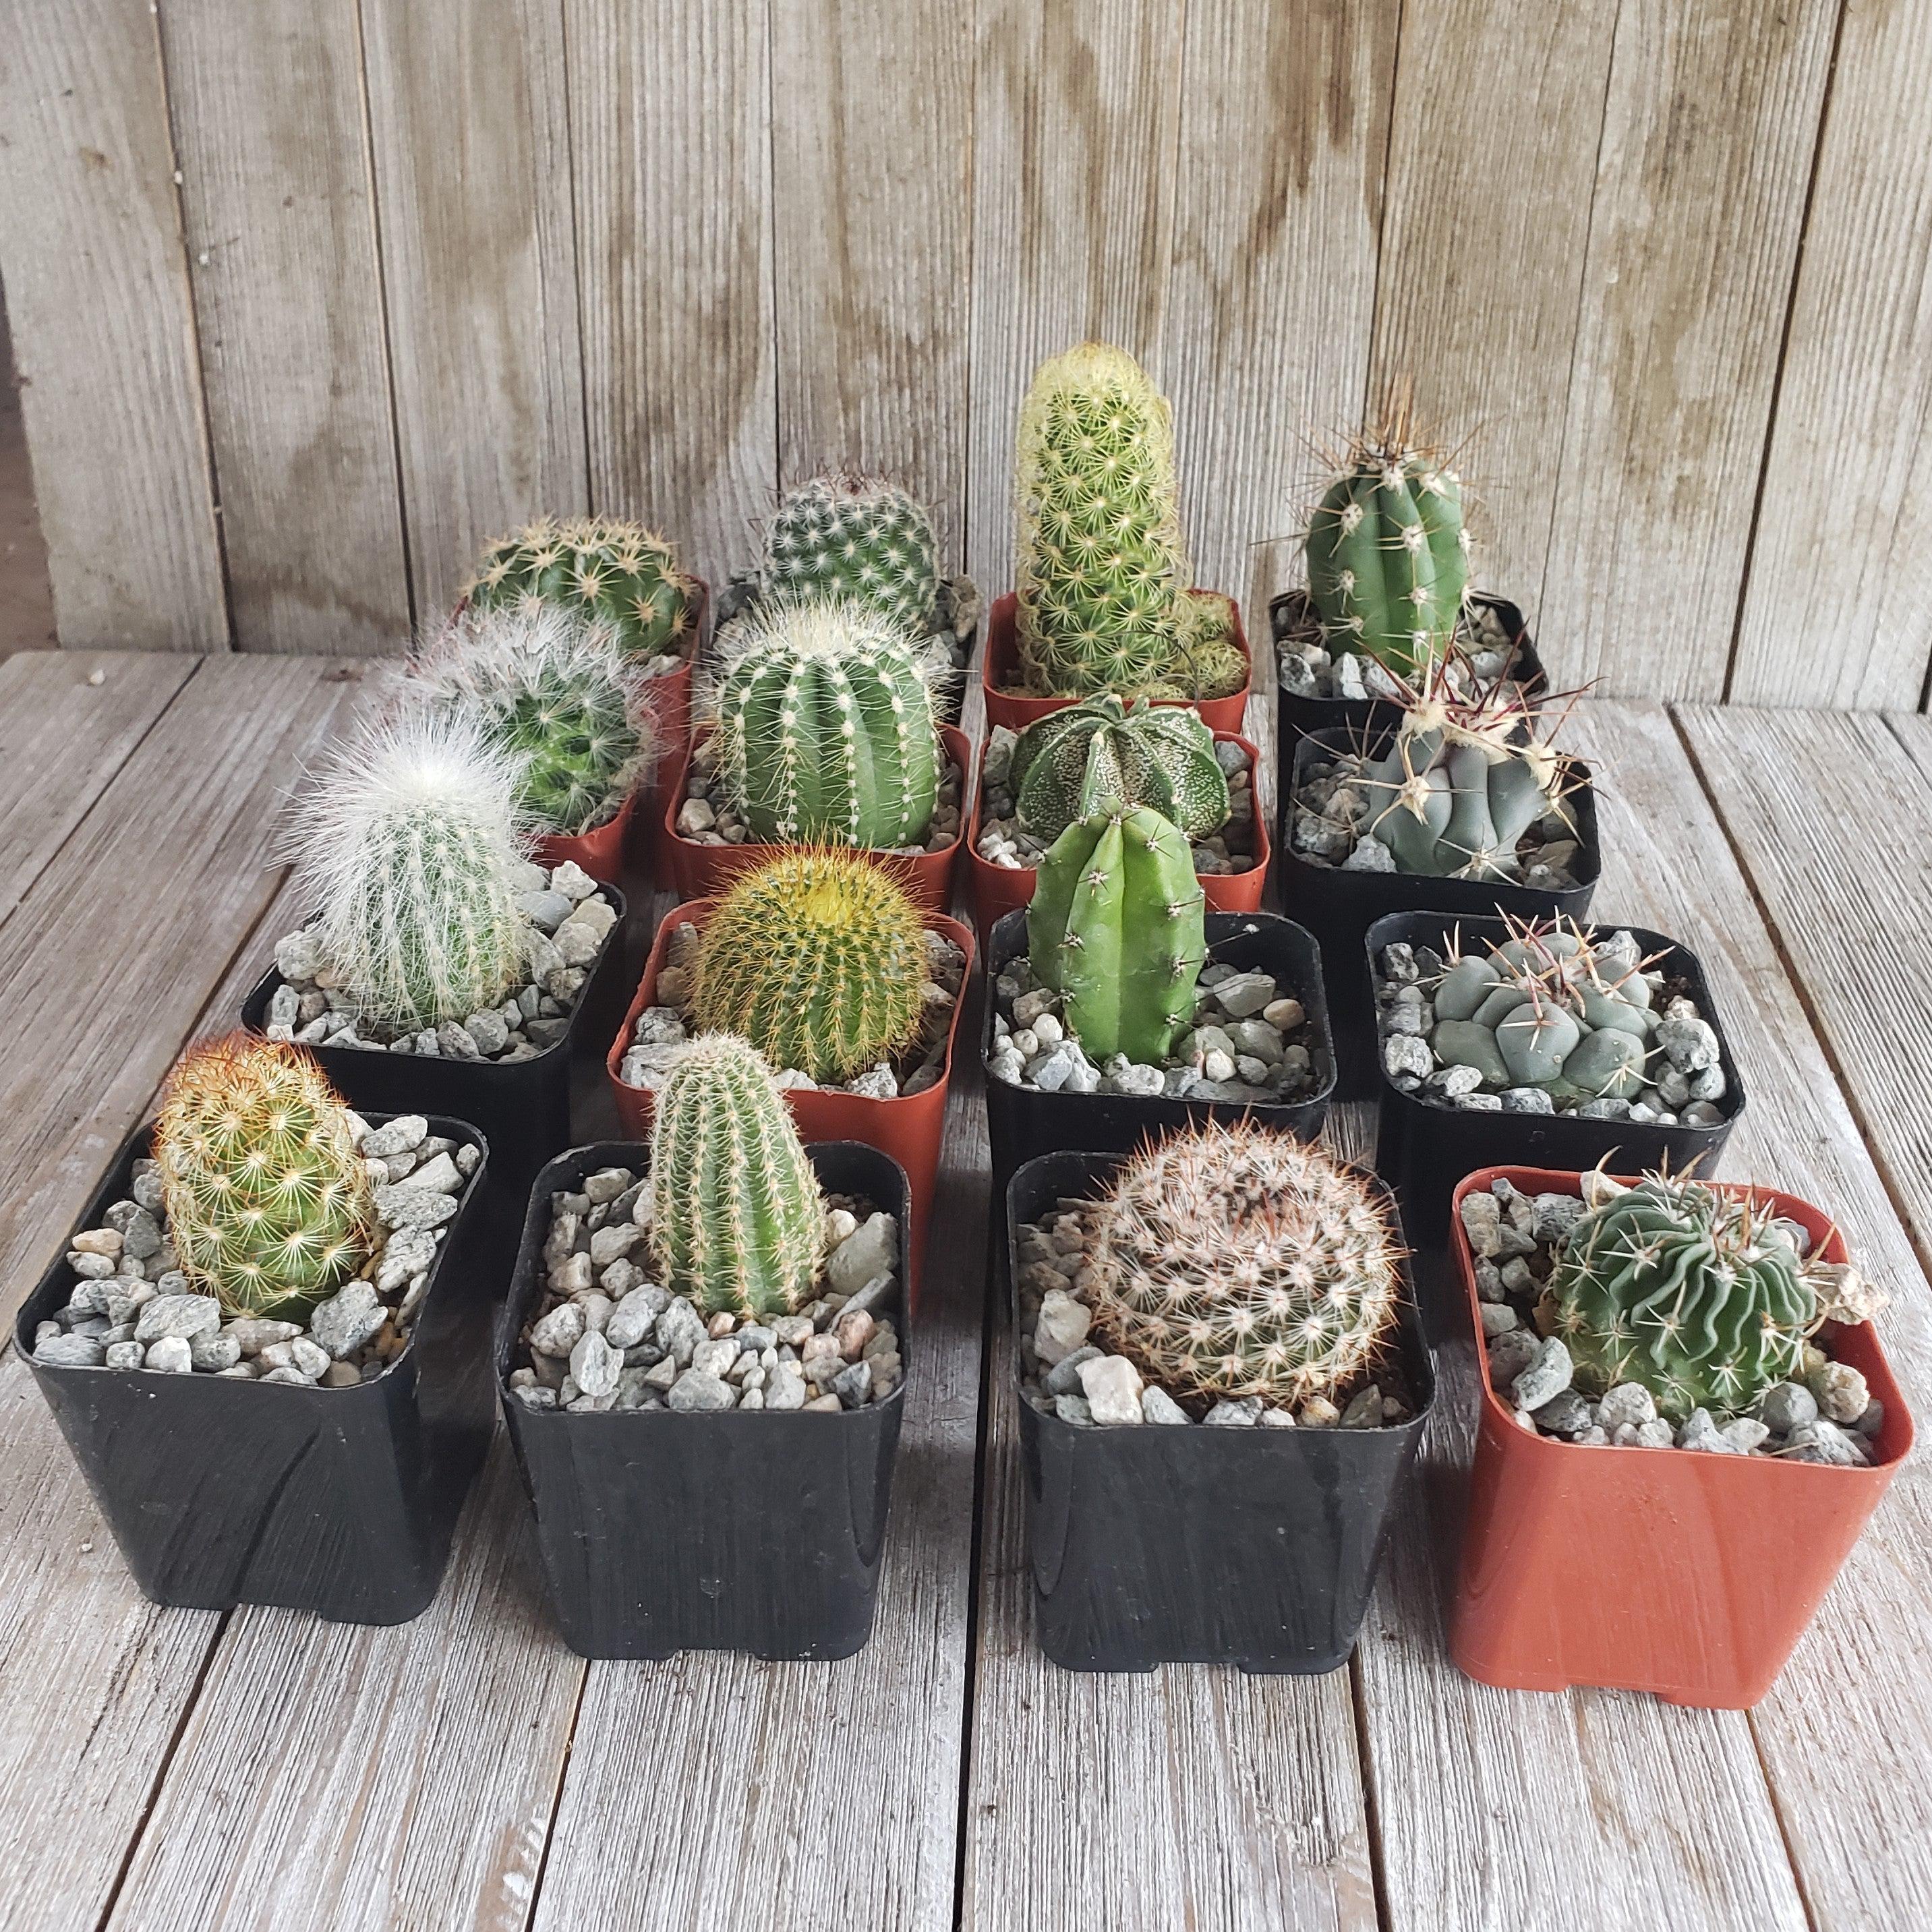 Decorative Pots for Succulents & Cacti